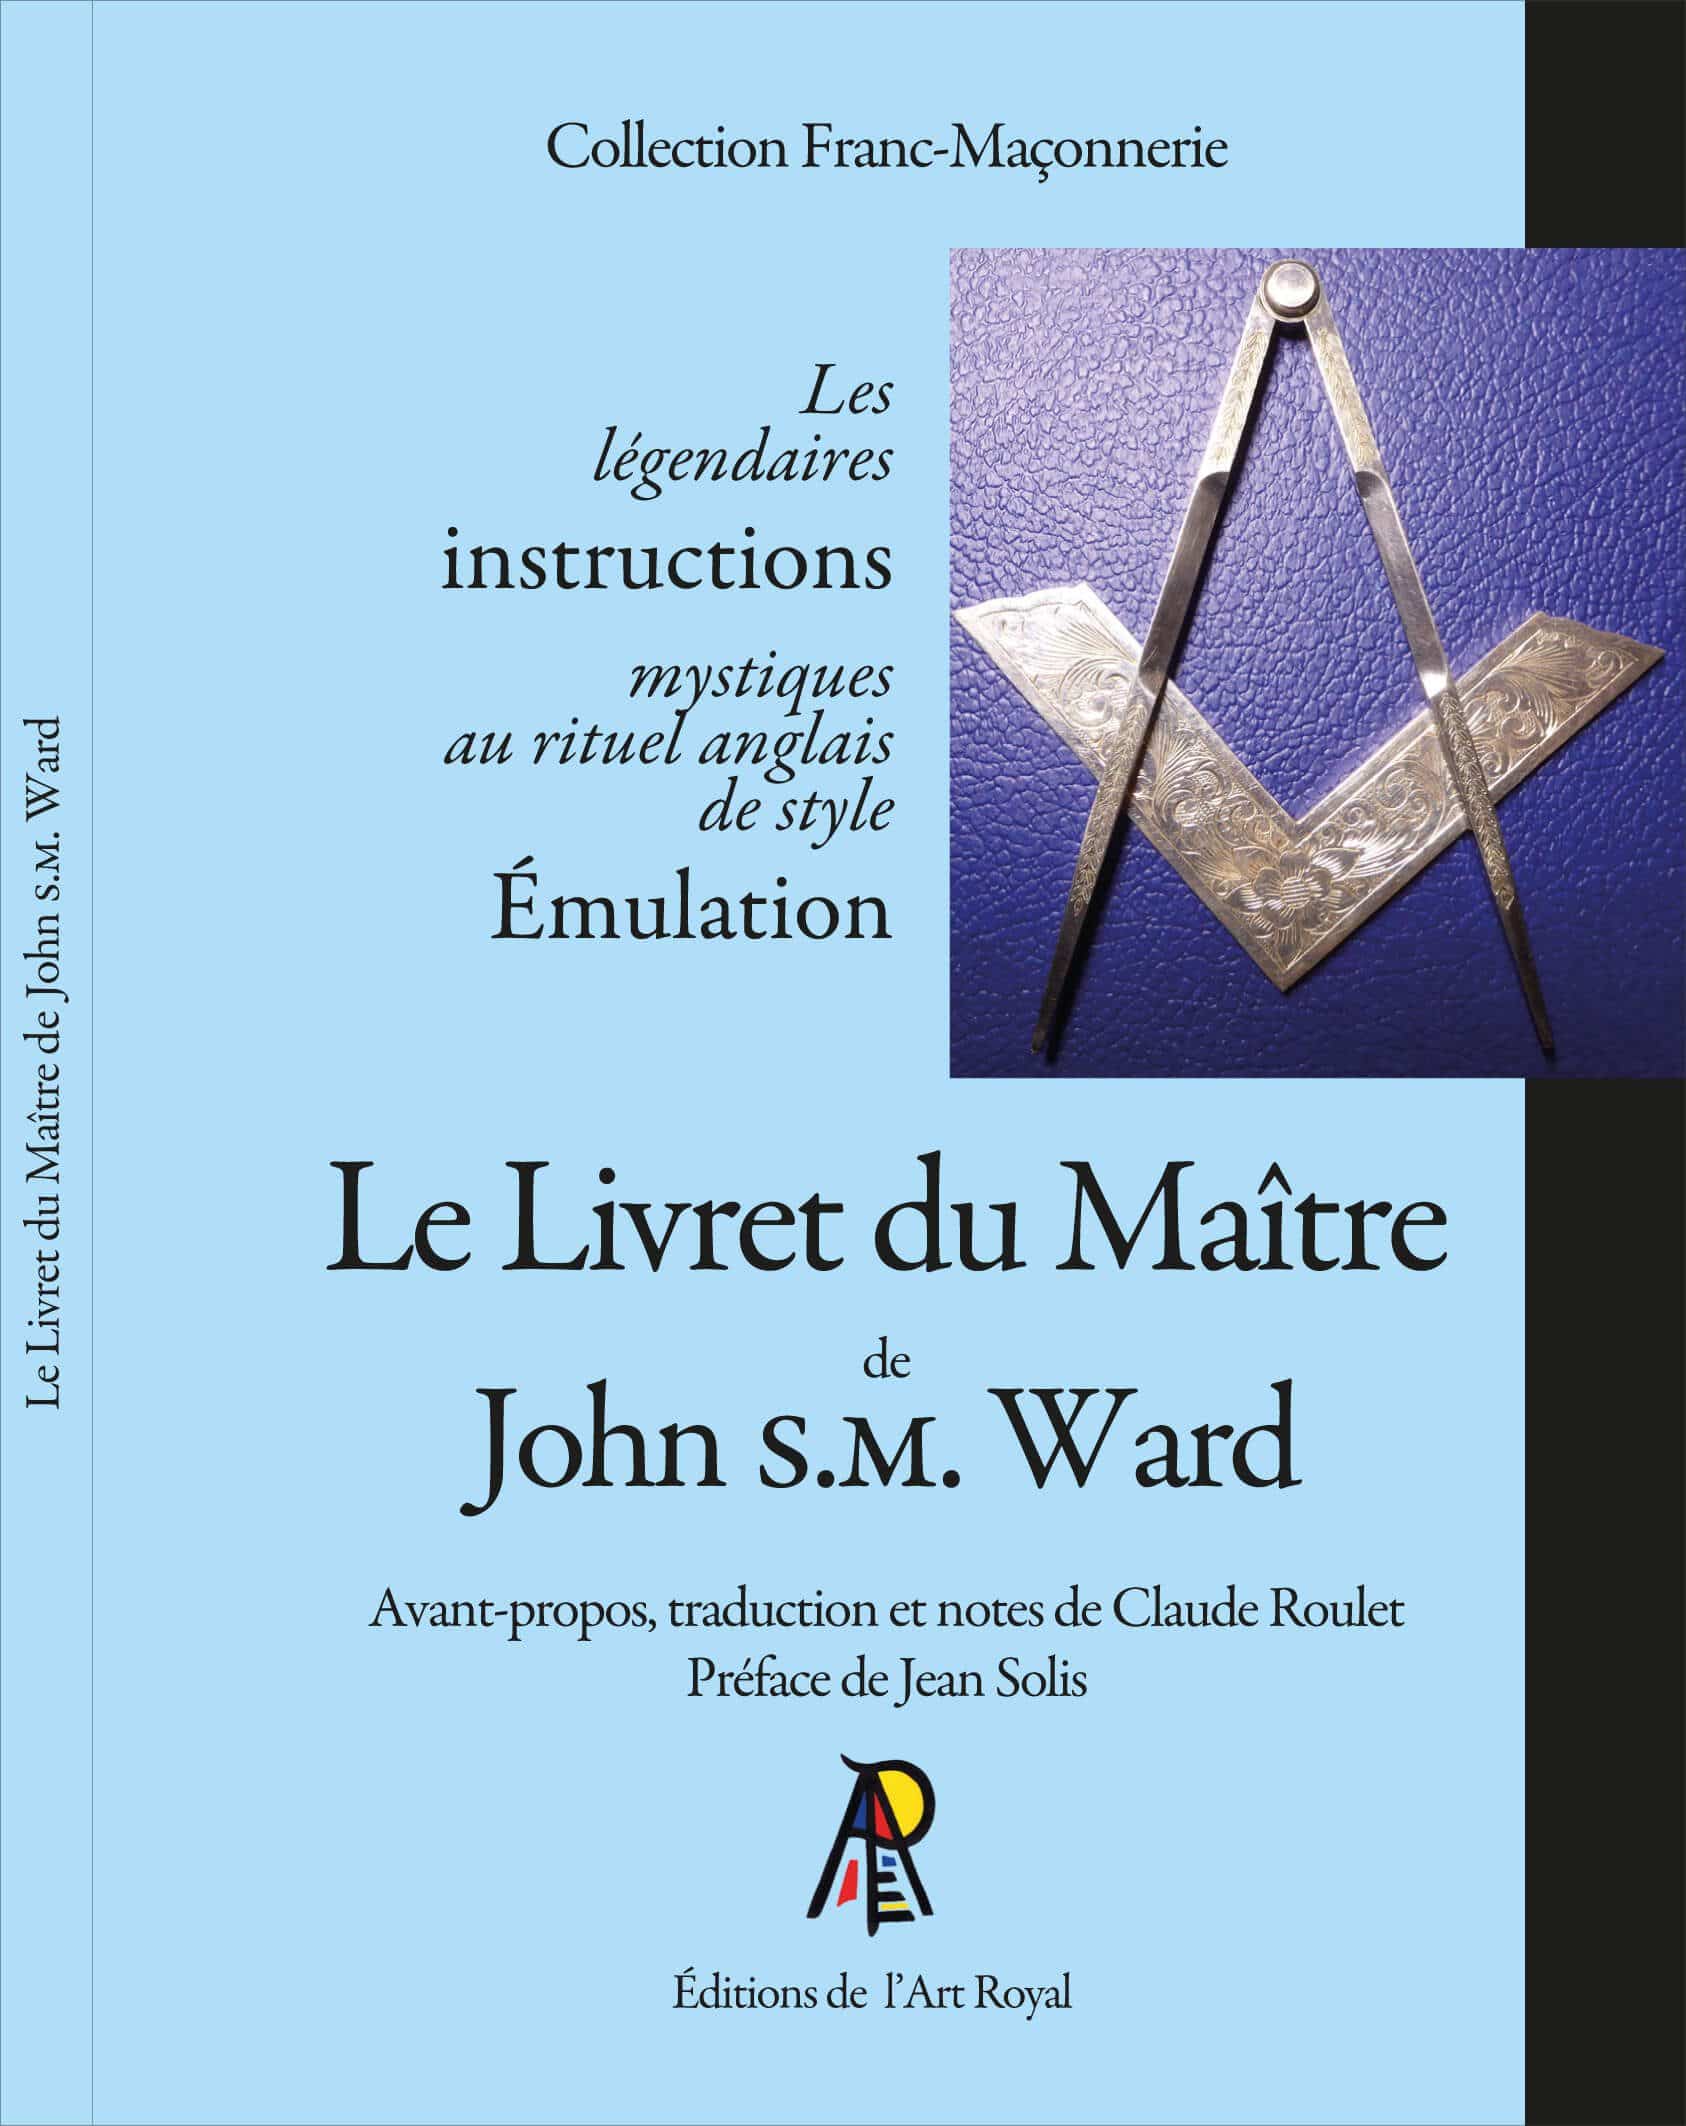 Le Livret du Maître de John S.M. Ward